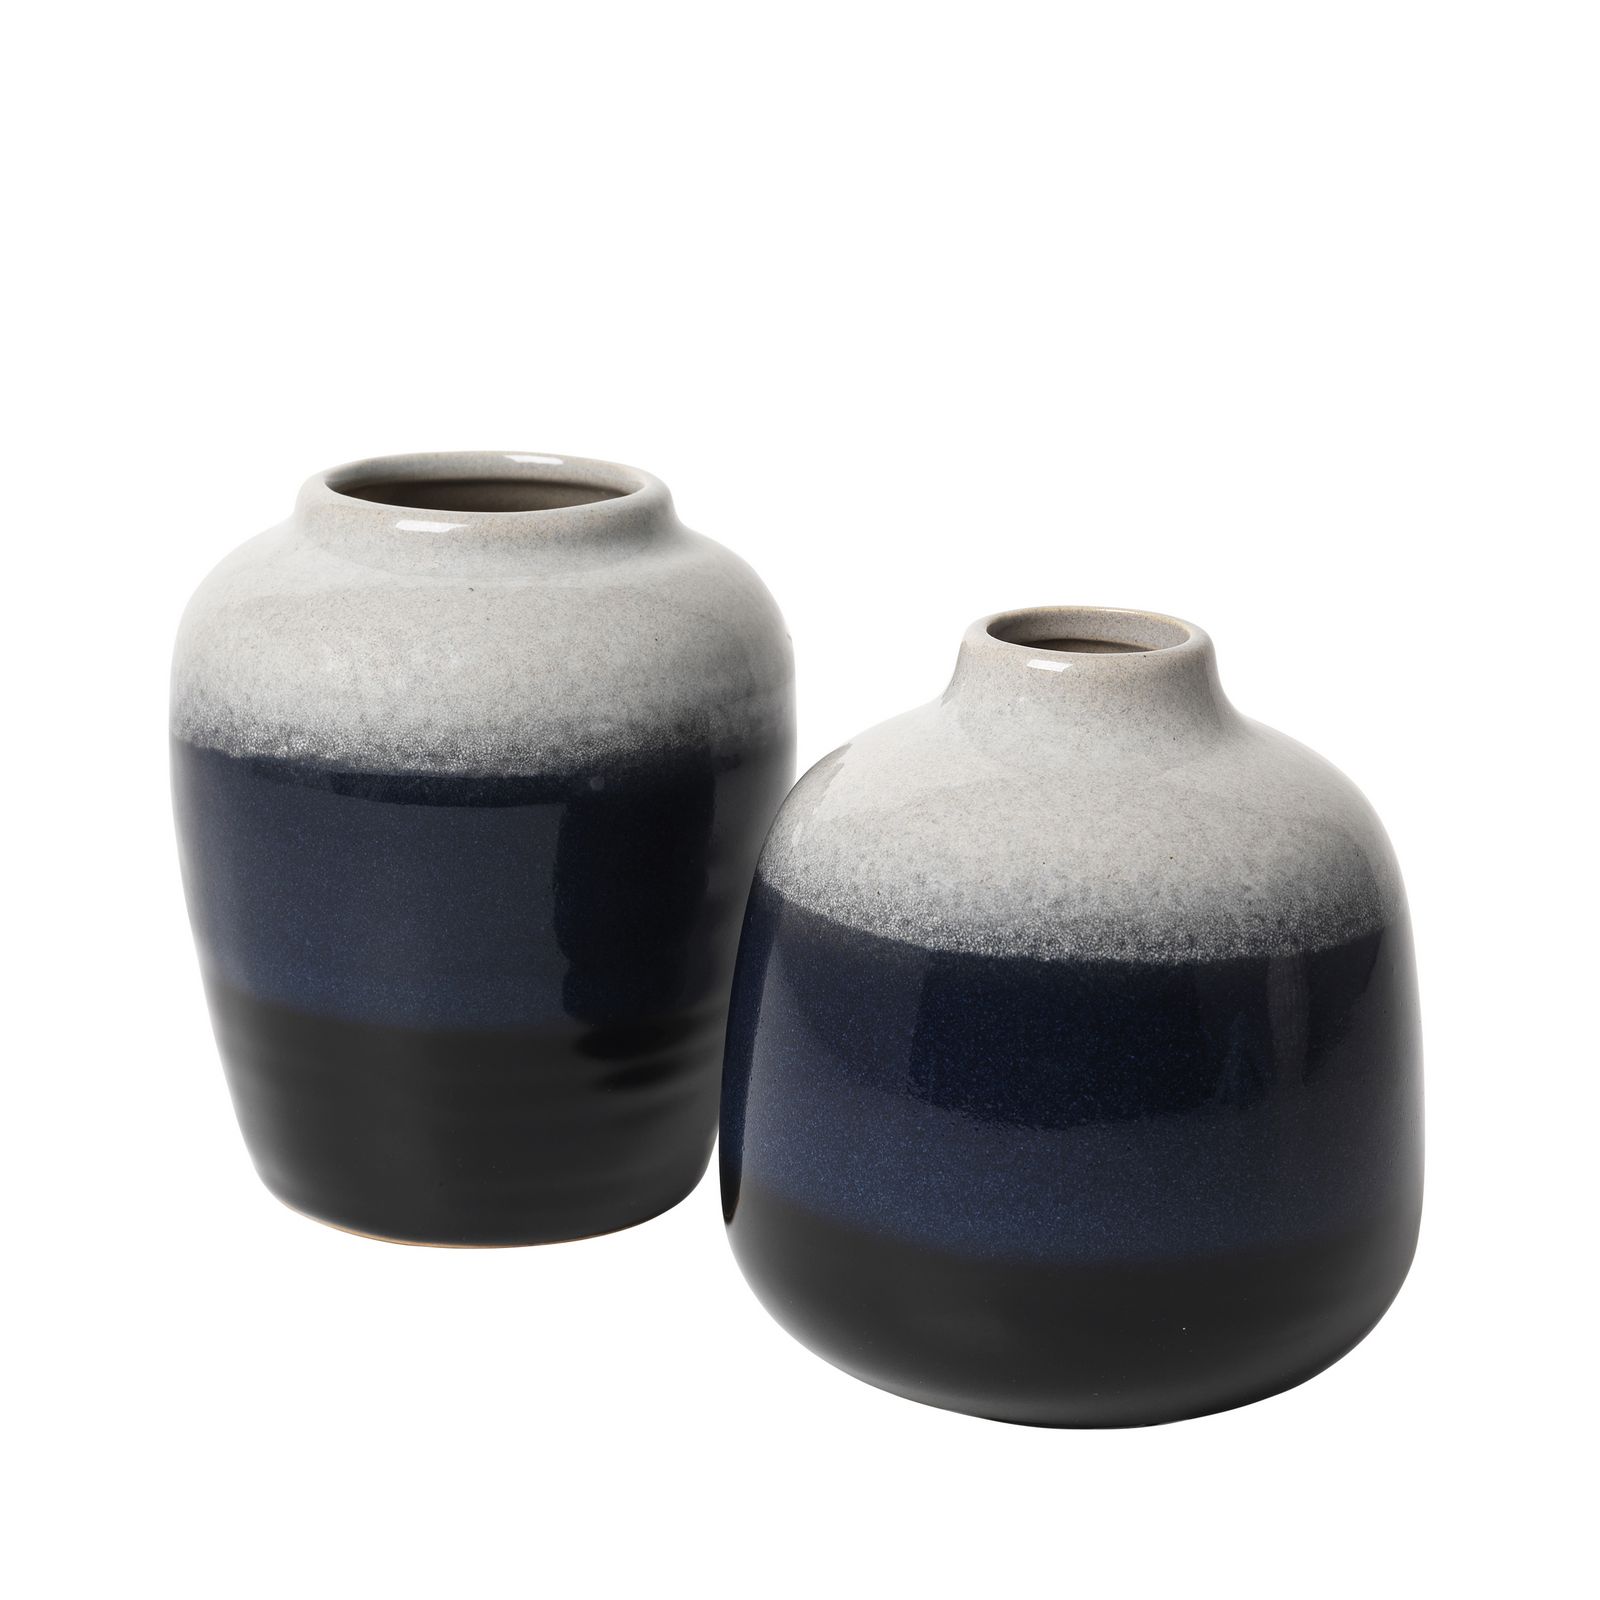 фото Набор ваз Broste Lau Ceramic, цвет: белый, синий, высота 10,5 см, 2 предмета. 14463162